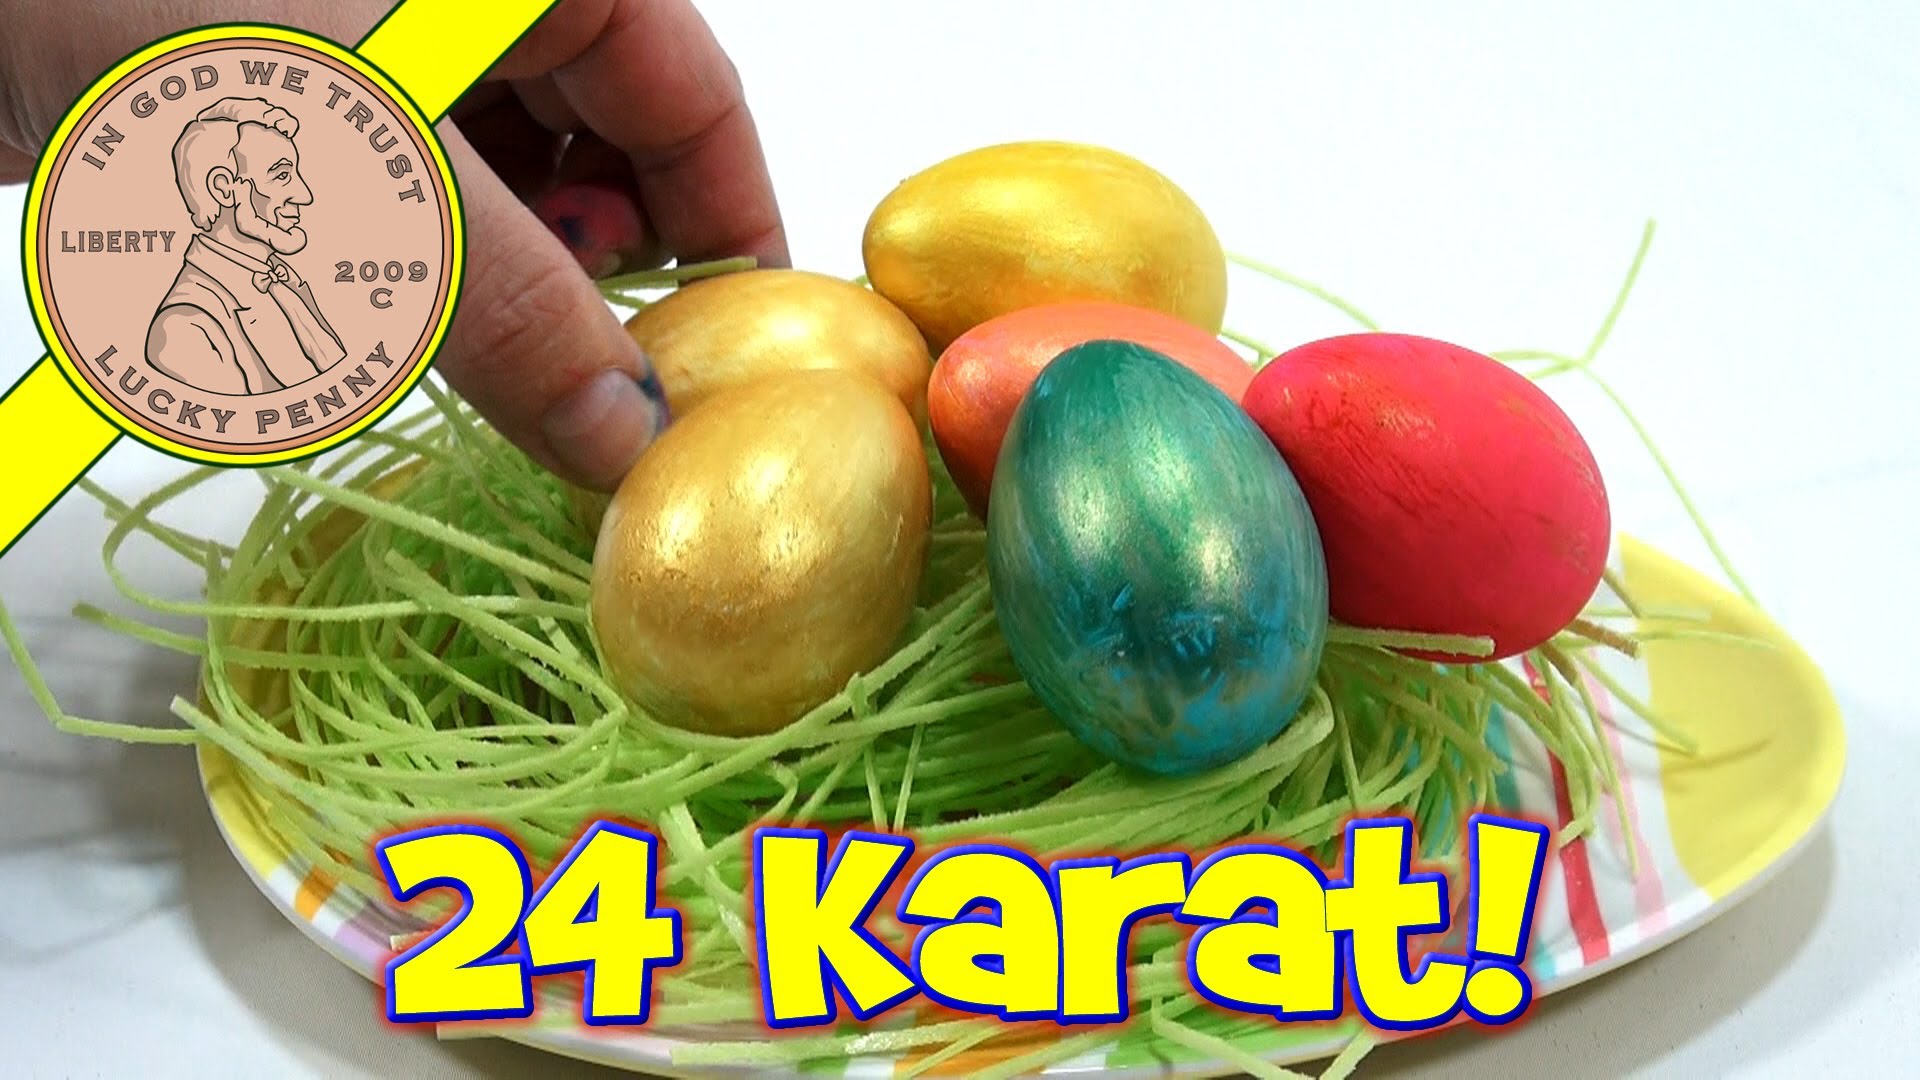 24 Karat Golden Easter Egg Coloring Kit & Plastic Easter Eggs! - YouTube